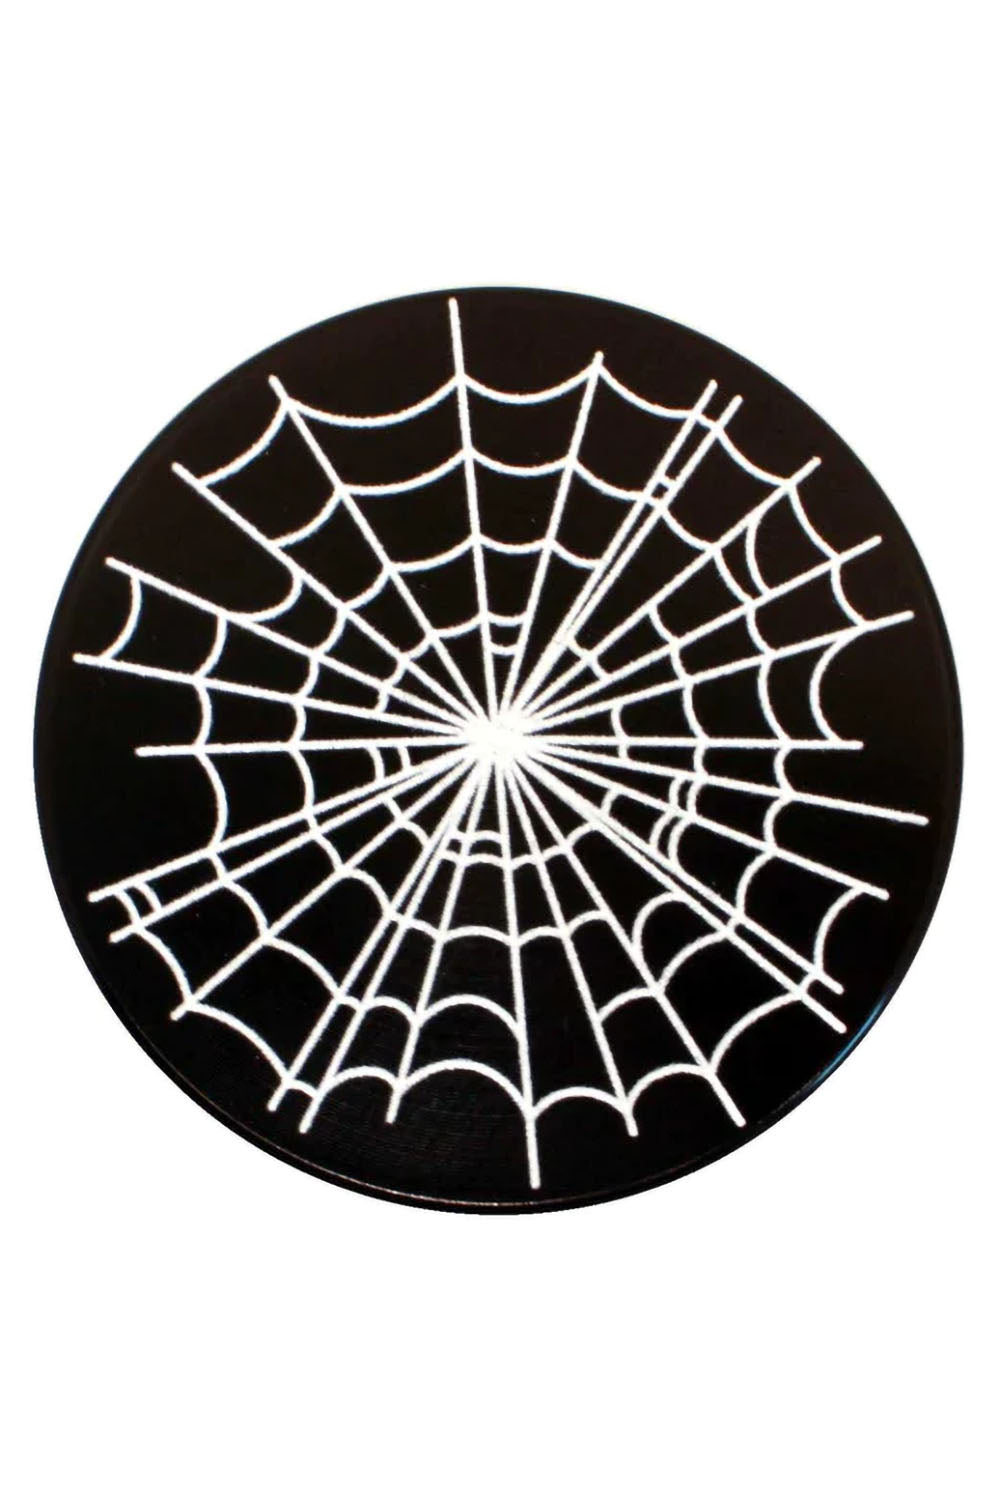 Spiderweb Grinder